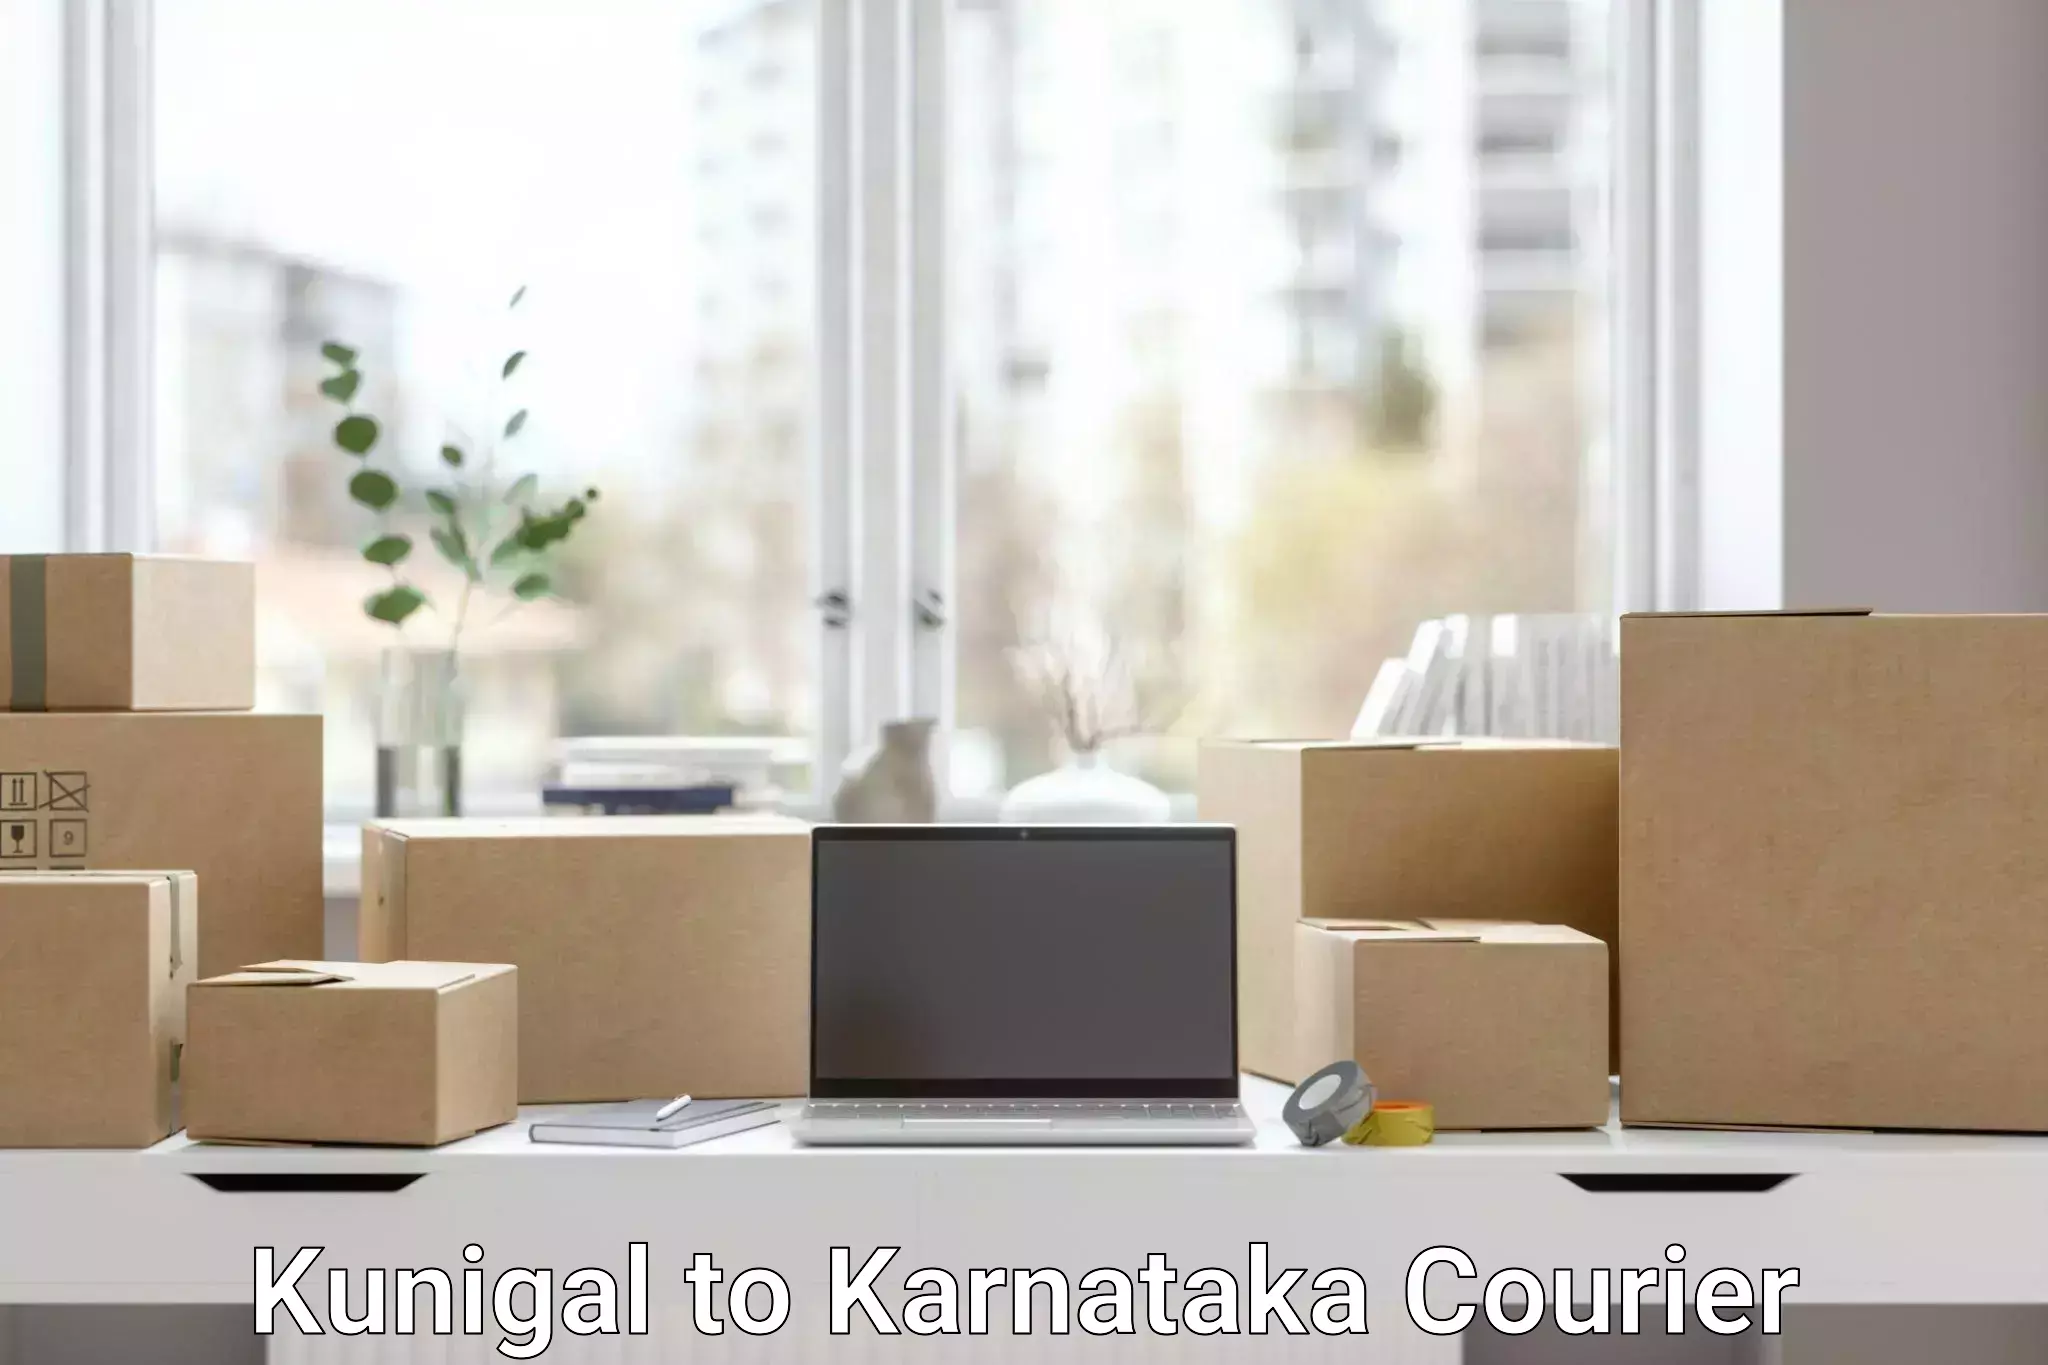 Scheduled delivery Kunigal to Karnataka